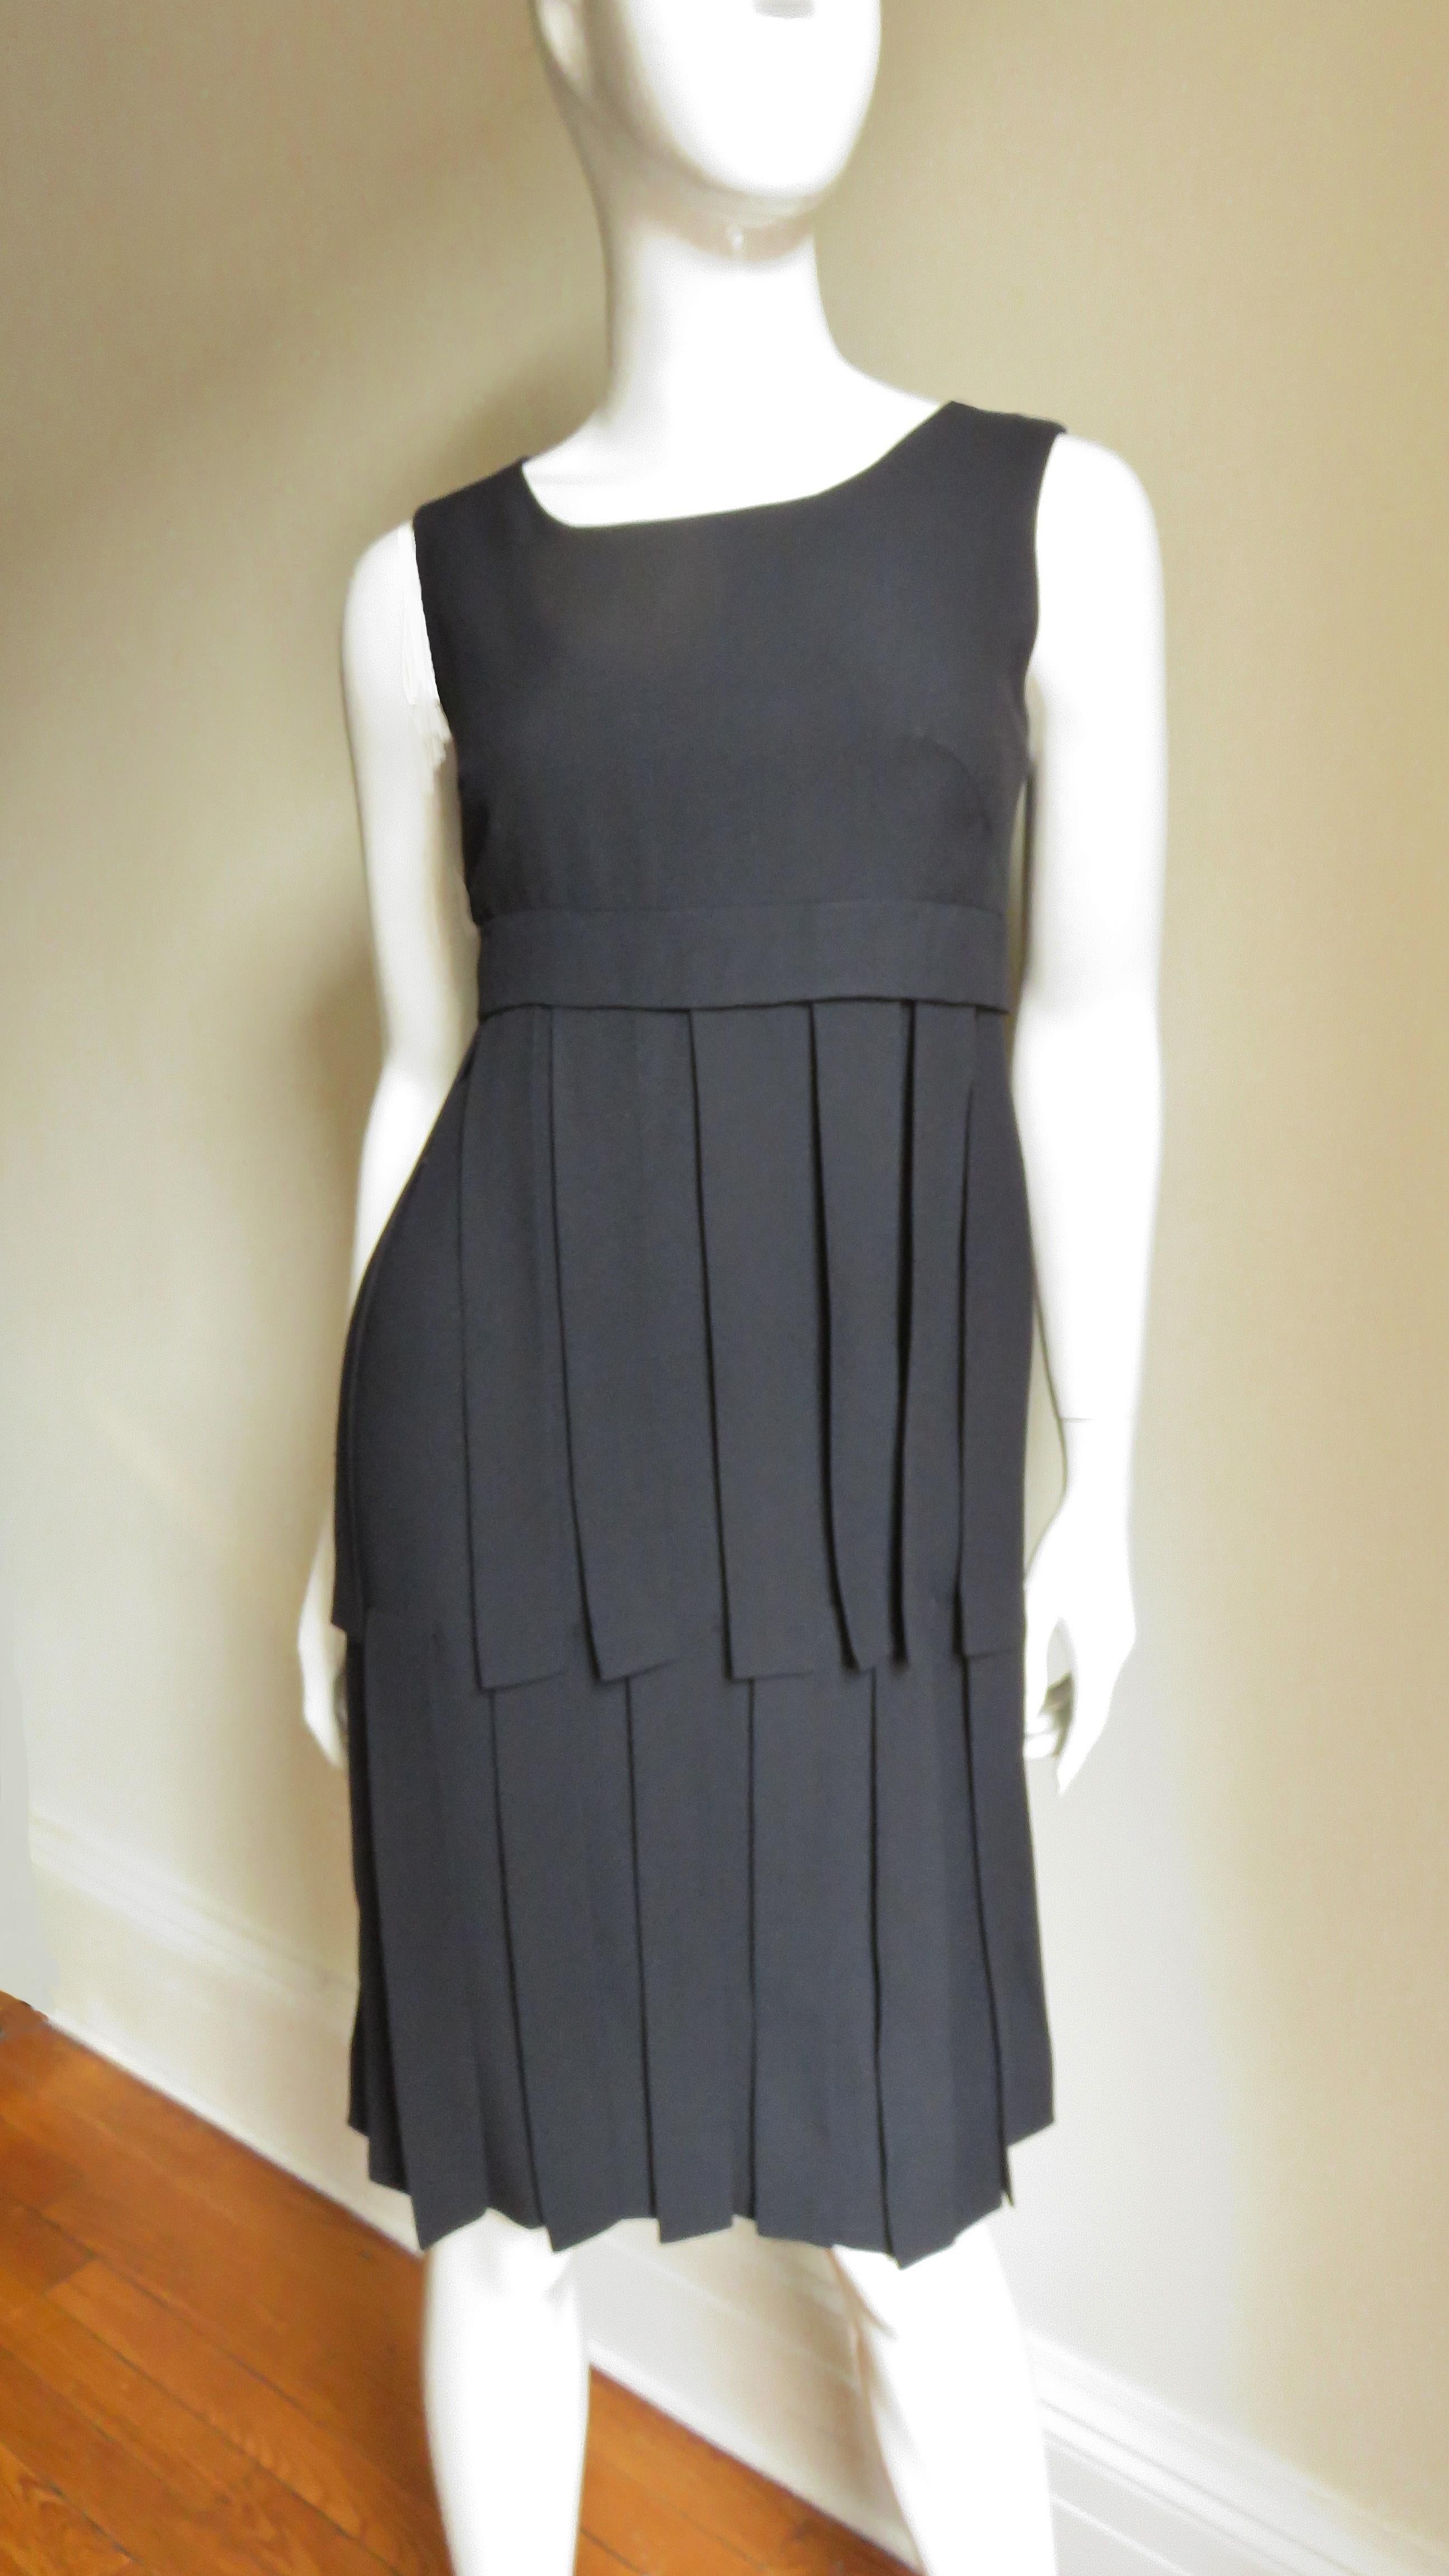 Ein bezauberndes schwarzes Kleid von Eloise Curtis.  Es handelt sich um ein ärmelloses Kleid mit Rundhalsausschnitt und 2 Reihen von 12-Zoll-Stoffbahnen, die von einem Band knapp unter der Brustlinie ausgehen, und einer Reihe von 14-Zoll-Bahnen